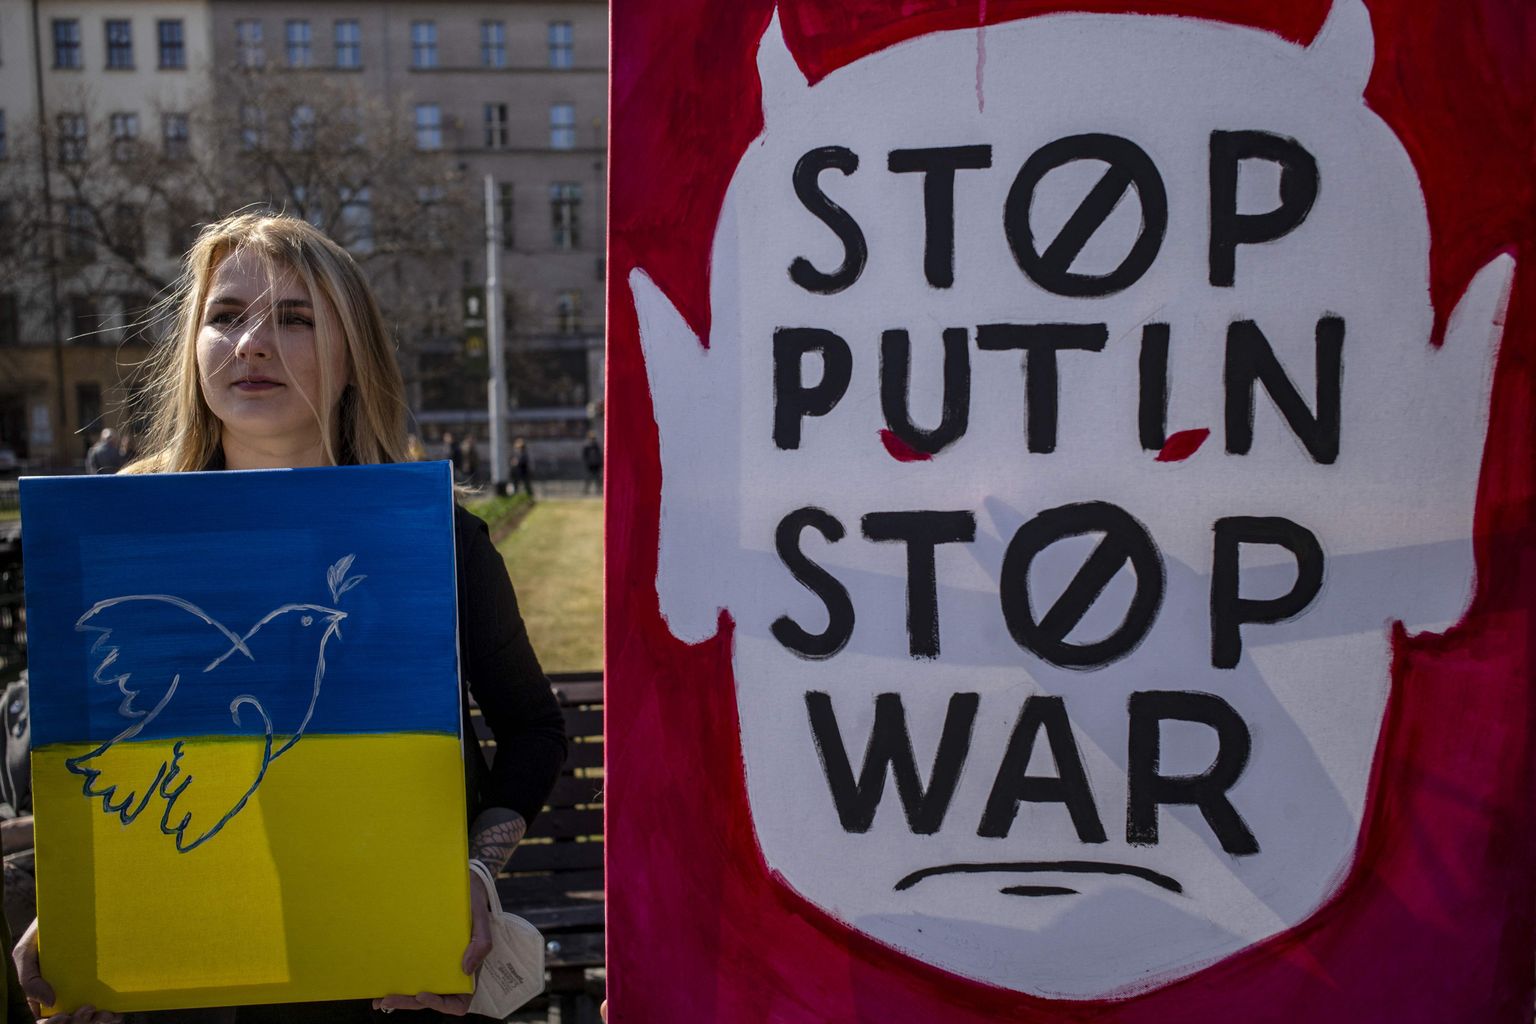 Putini sõjavastaseid meeleavaldusi peetakse üle maailma. Fotol Ukrainat toetav miiting Prahas.